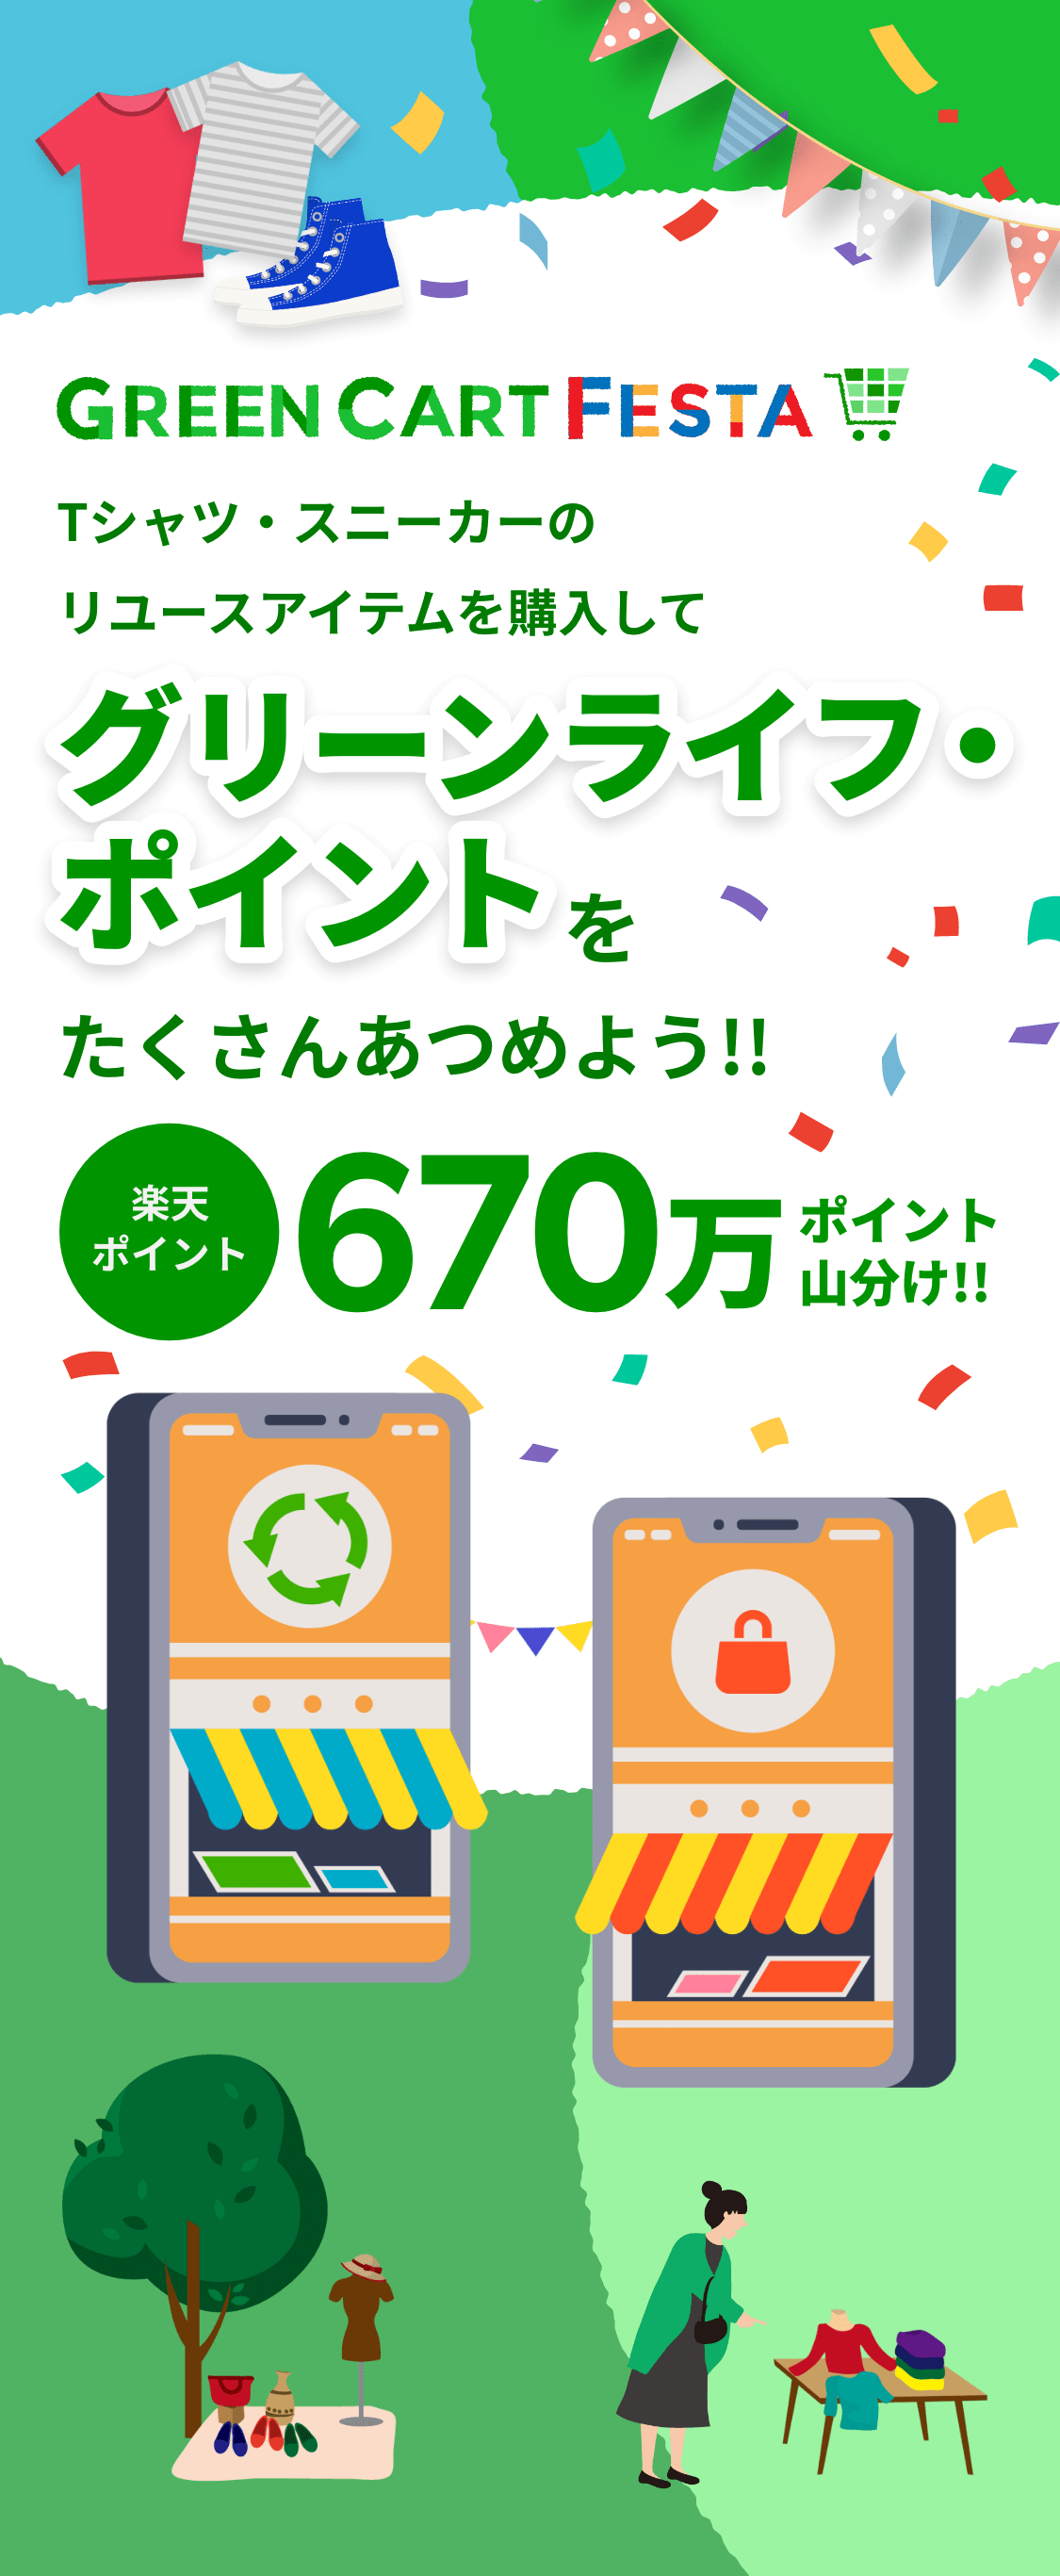 Green Cart Festa シャツ・スニーカーの リユースアイテムを購入してグリーンライフ・ポイントを たくさんあつめよう!! 楽天ポイント670万ポイント山分け!!